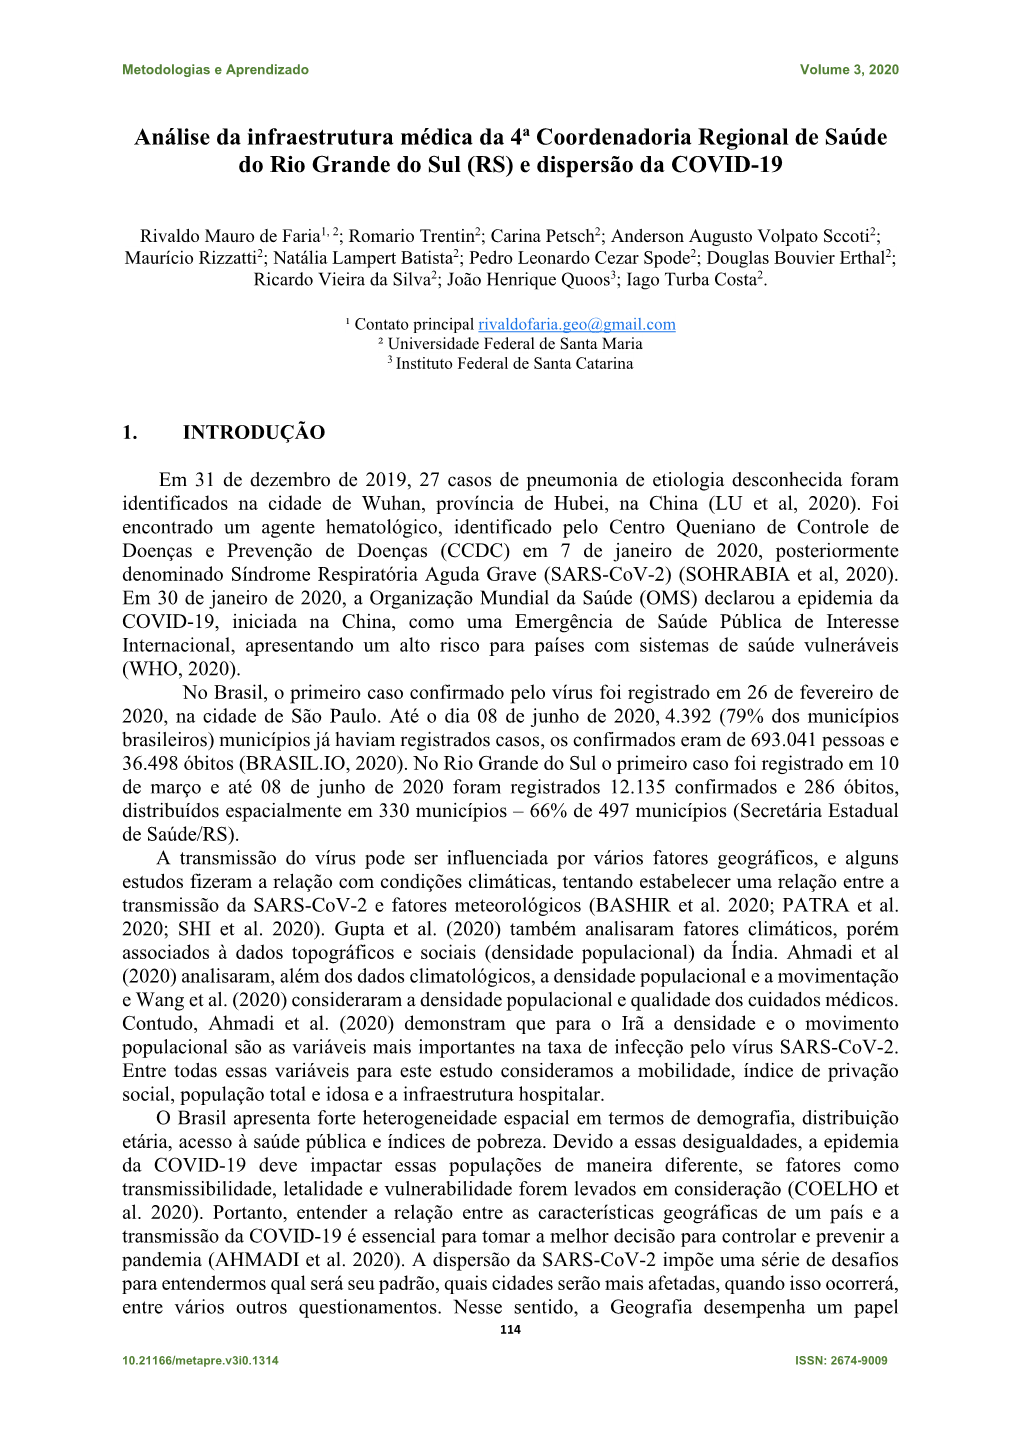 Análise Da Infraestrutura Médica Da 4A Coordenadoria Regional De Saúde Do Rio Grande Do Sul (RS) E Dispersão Da COVID-19